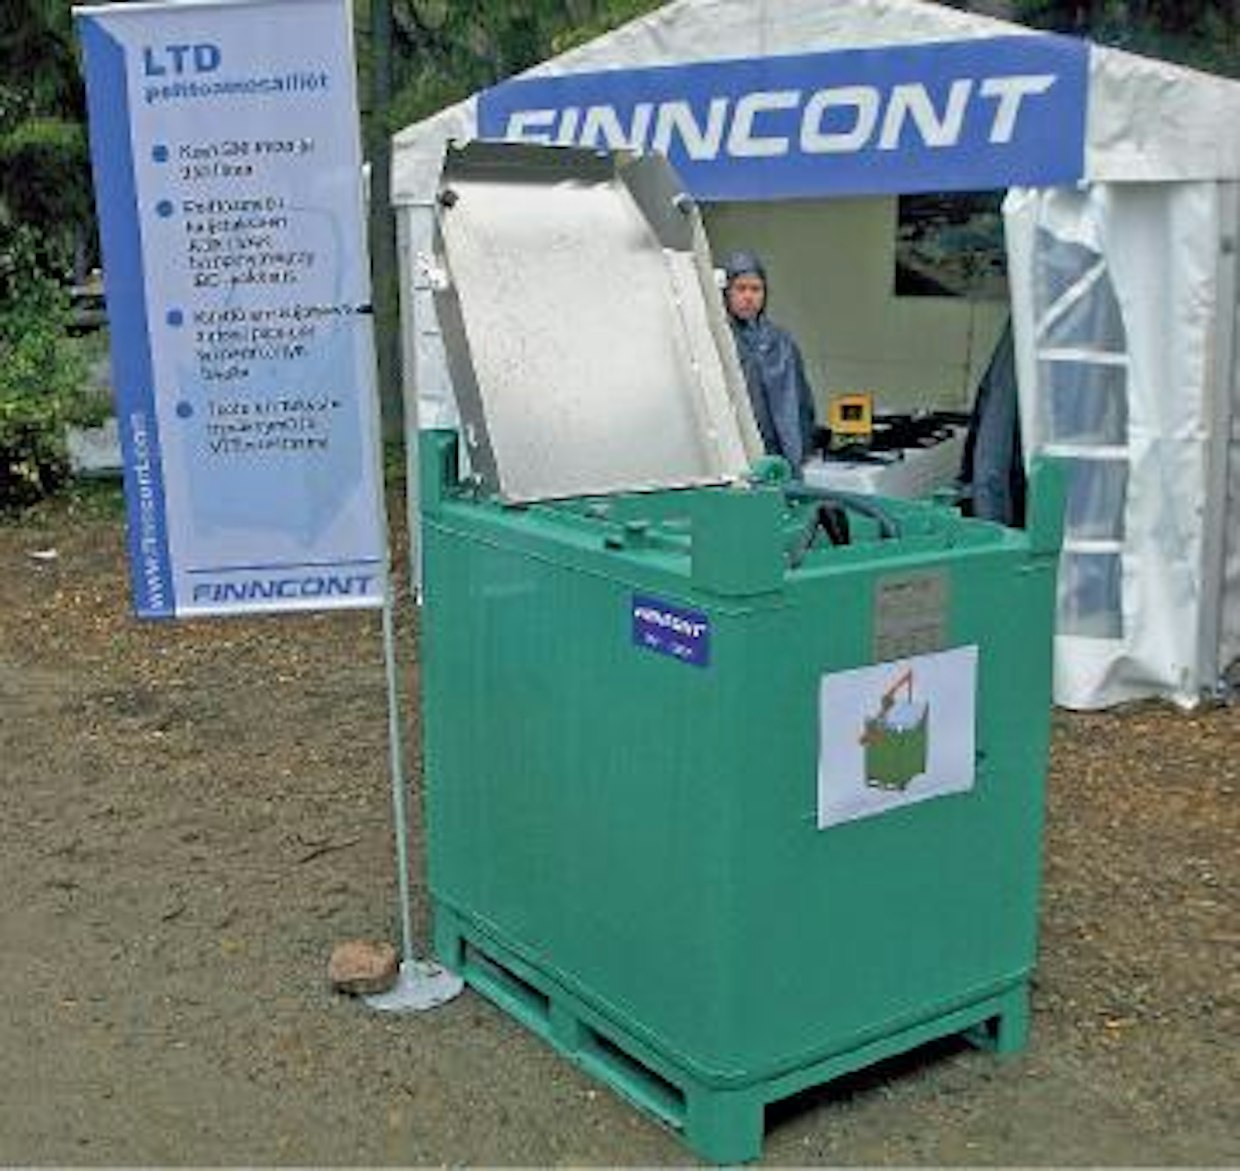 Finncont on ryhtynyt valmistamaan maantiekuljetuksiin ilman ADR-lupaa sopivia metsä- ja kaivukonetyömaiden polttoainesäiliöitä. Säiliön varustukseen kuuluu käsipumppu, 3,5 m tankkausletku ja -pistooli, 2” kamloc-täyttöyhde ja 3/4” täyttöyhde koneen omalle pumpulle. Lisävarusteena saa sähköpumpun. Pumppu ja yhteet on sijoitettu suojaan kolhuilta ja varkailta lukittavan alumiinikannen alle. Säiliökoot ovat 500 ja 900 litraa, pohjakoko on molemmissa sama 1210 mm x 910 mm. Malliin on suunnitteilla myös kahva kuormainnostoa varten. Hinnat ilman arvonlisäveroa ovat 1550 € (LTD-500) ja 1750 € (LTD-900). (MW)